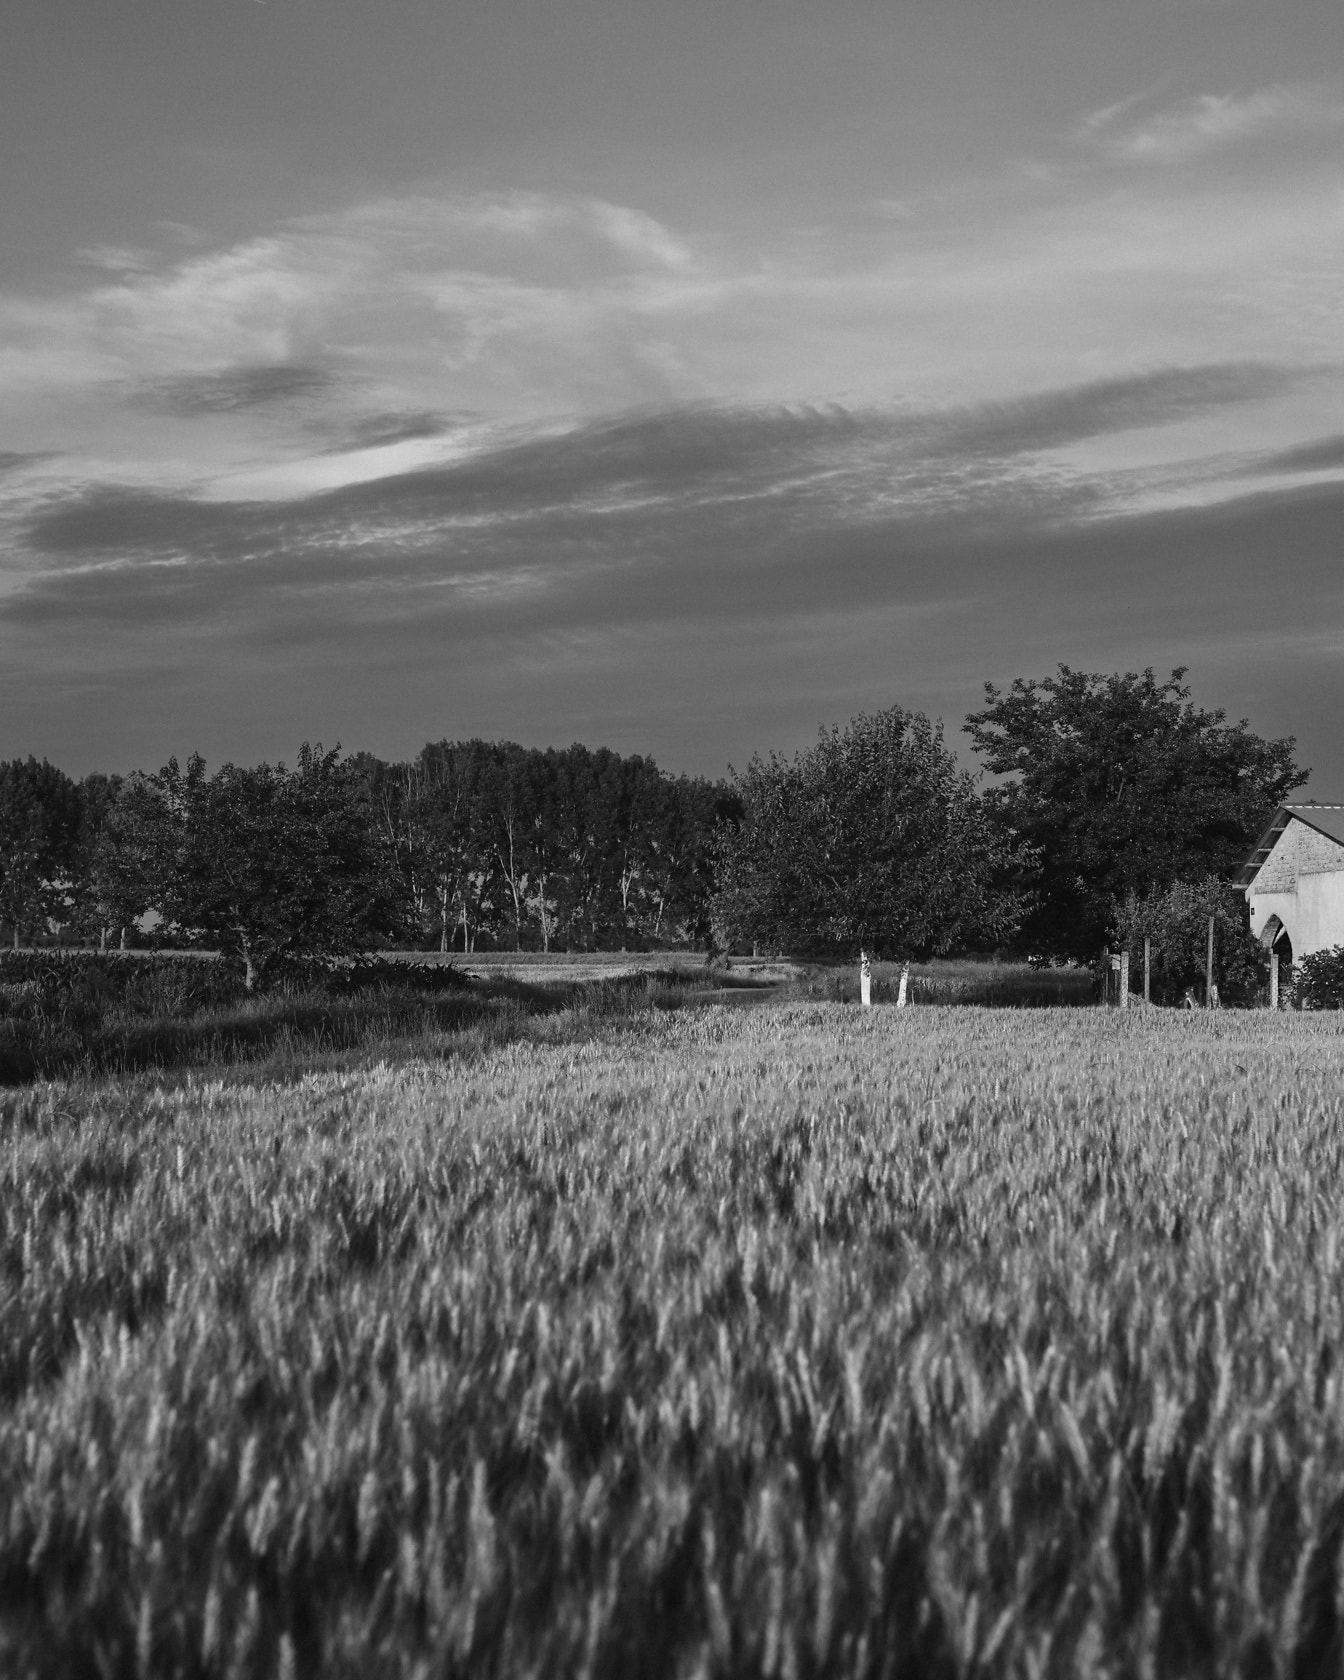 Çiftlik evi ile tarım arazisinde buğday tarlasının siyah beyaz fotoğrafı